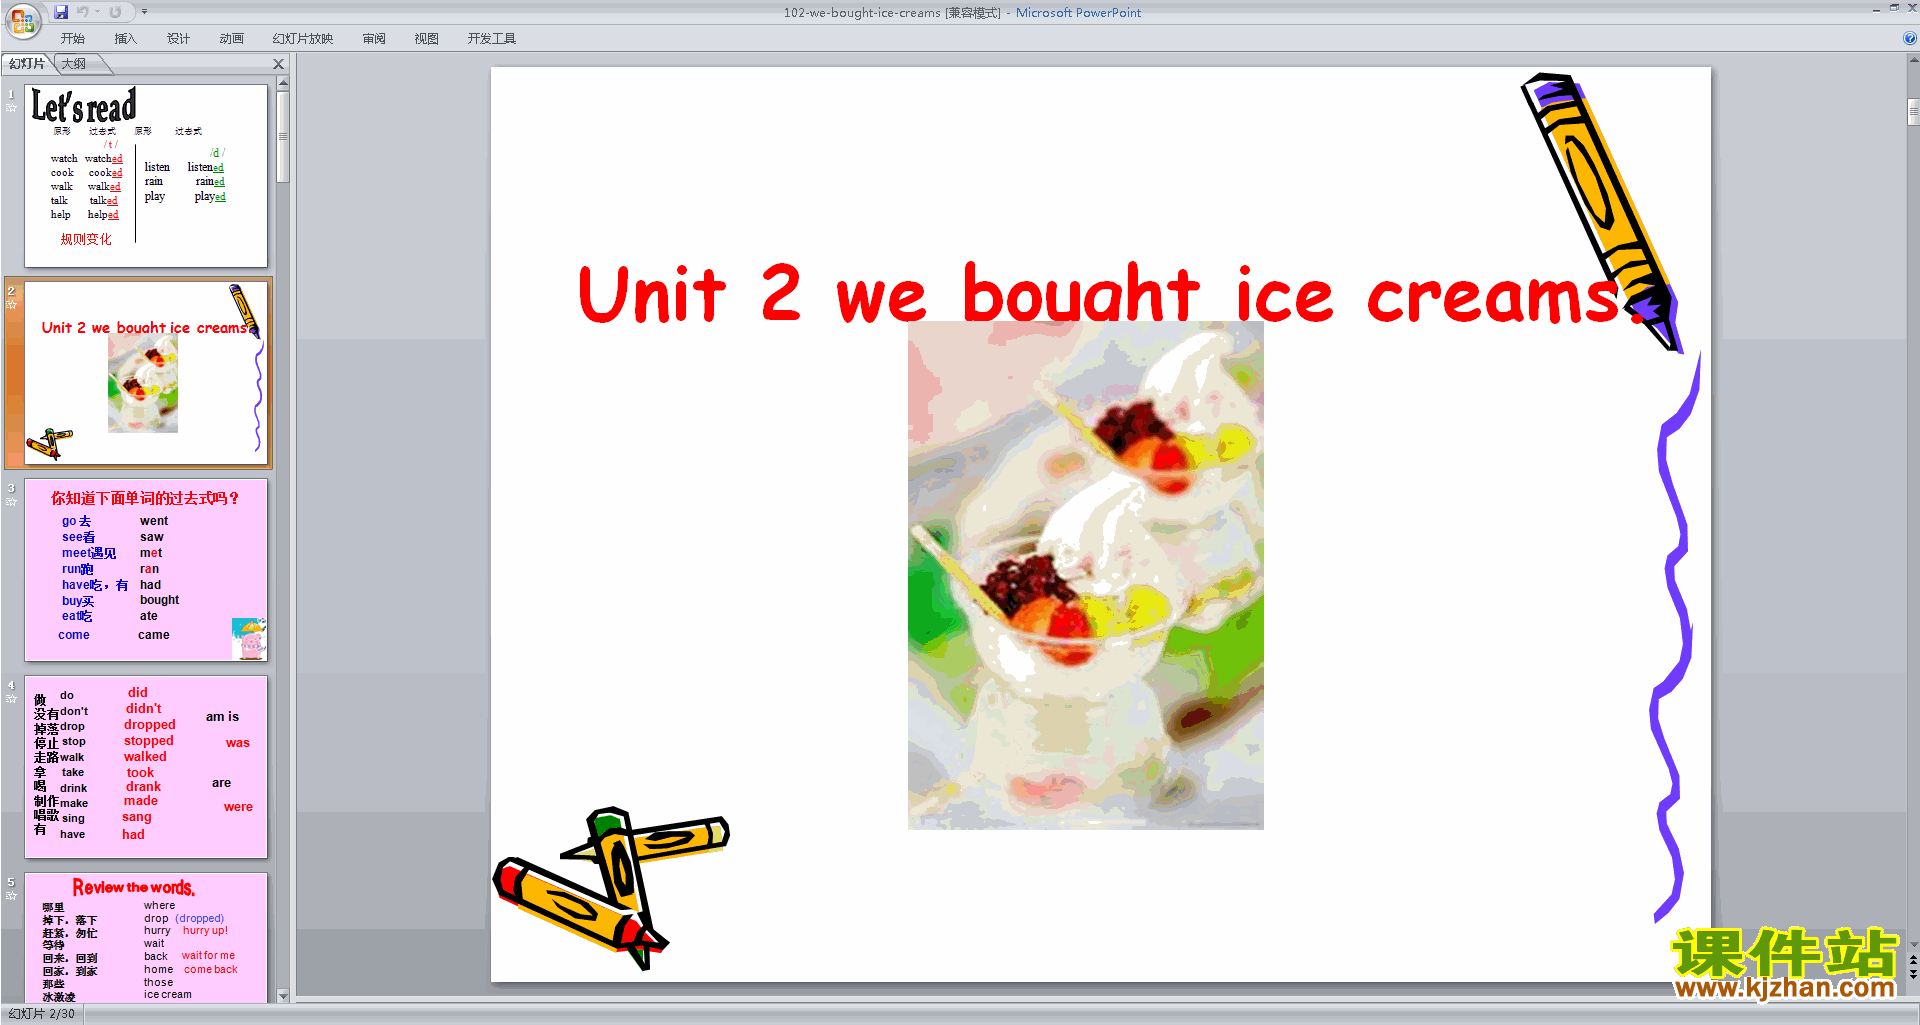 Module1 Unit2 We bought ice creamspptμ3